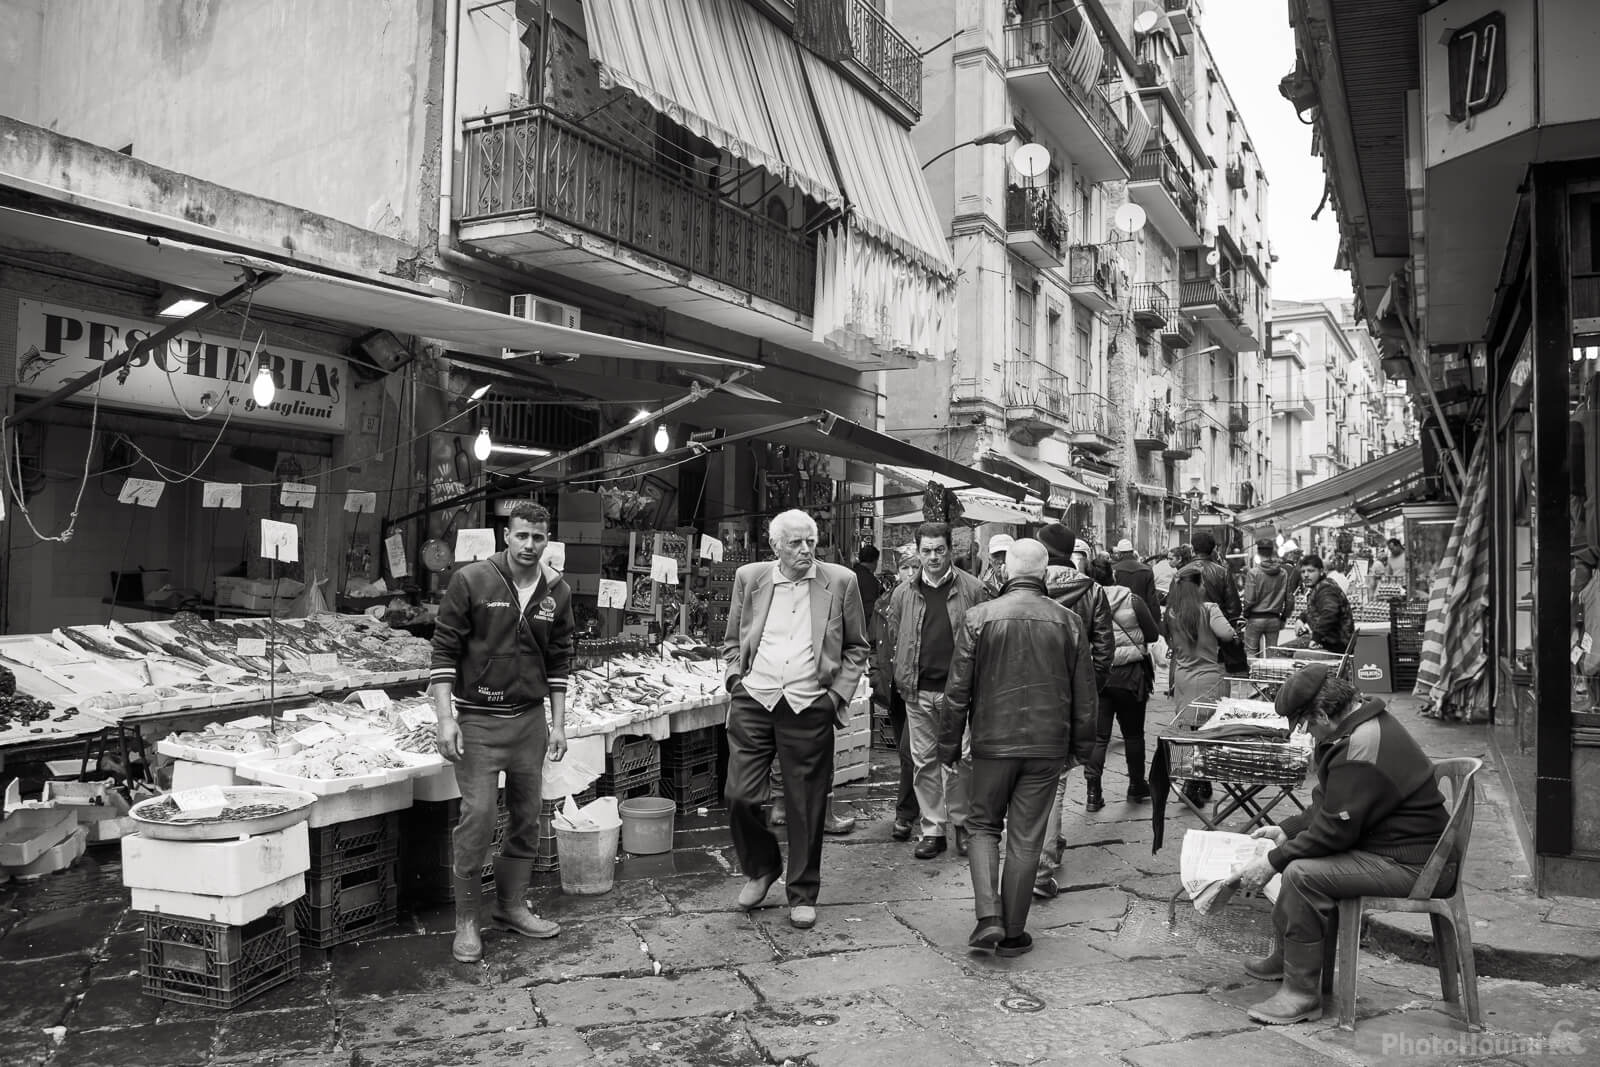 Image of Porta Nolana Fish Market Street Photography by Raimondo Giamberduca